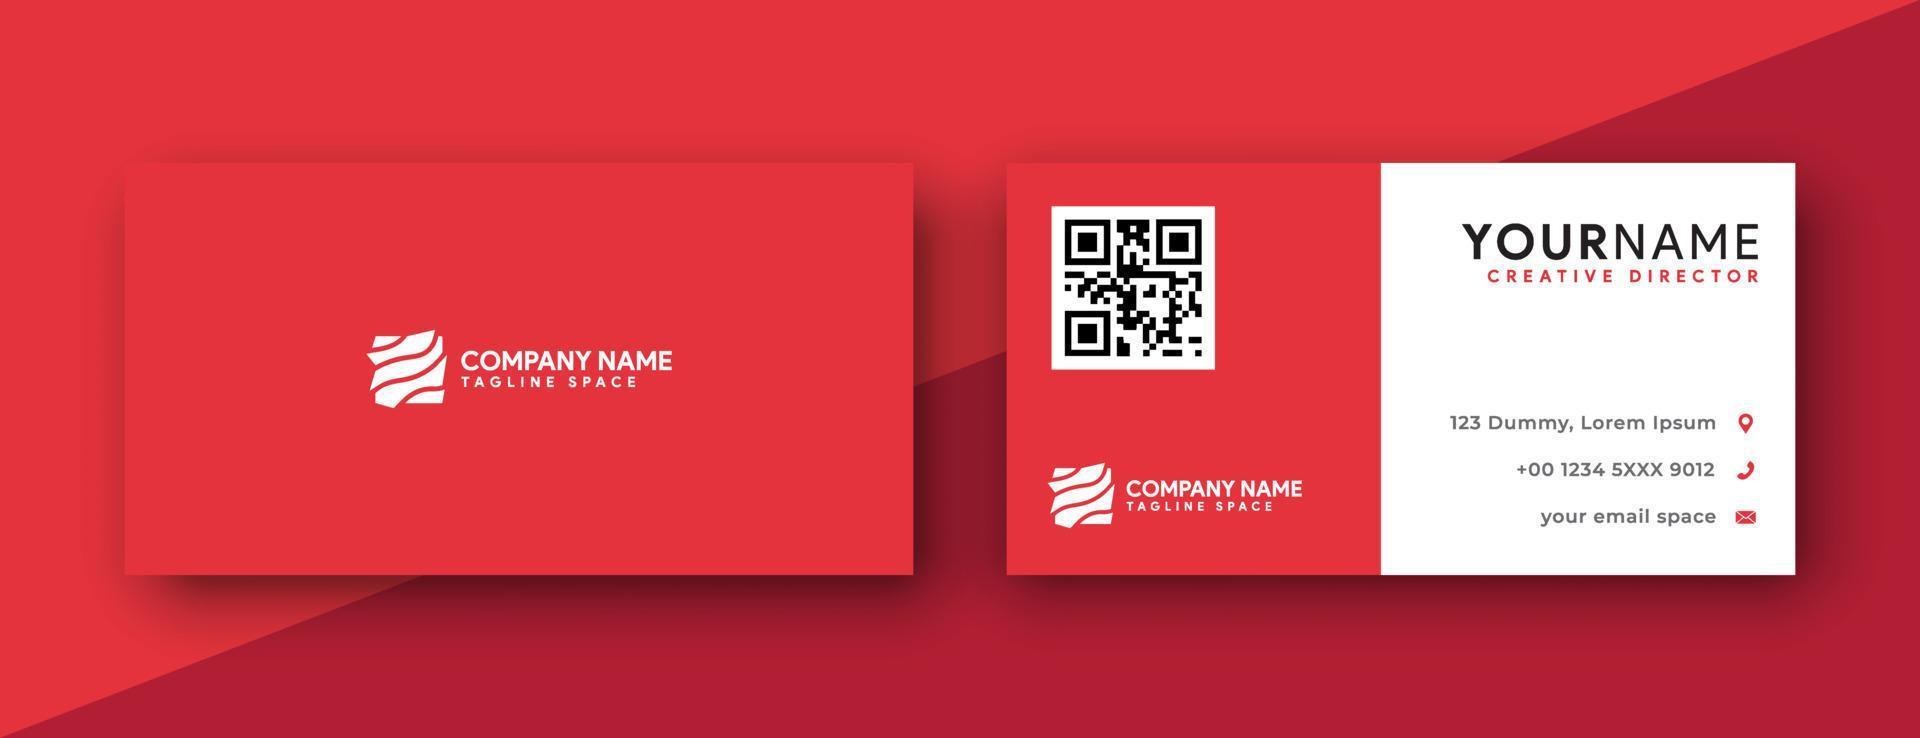 dubbelzijdig visitekaartje ontwerpsjabloon. rood visitekaartjeontwerp. eenvoudig en modern ontwerp. vector illustratie